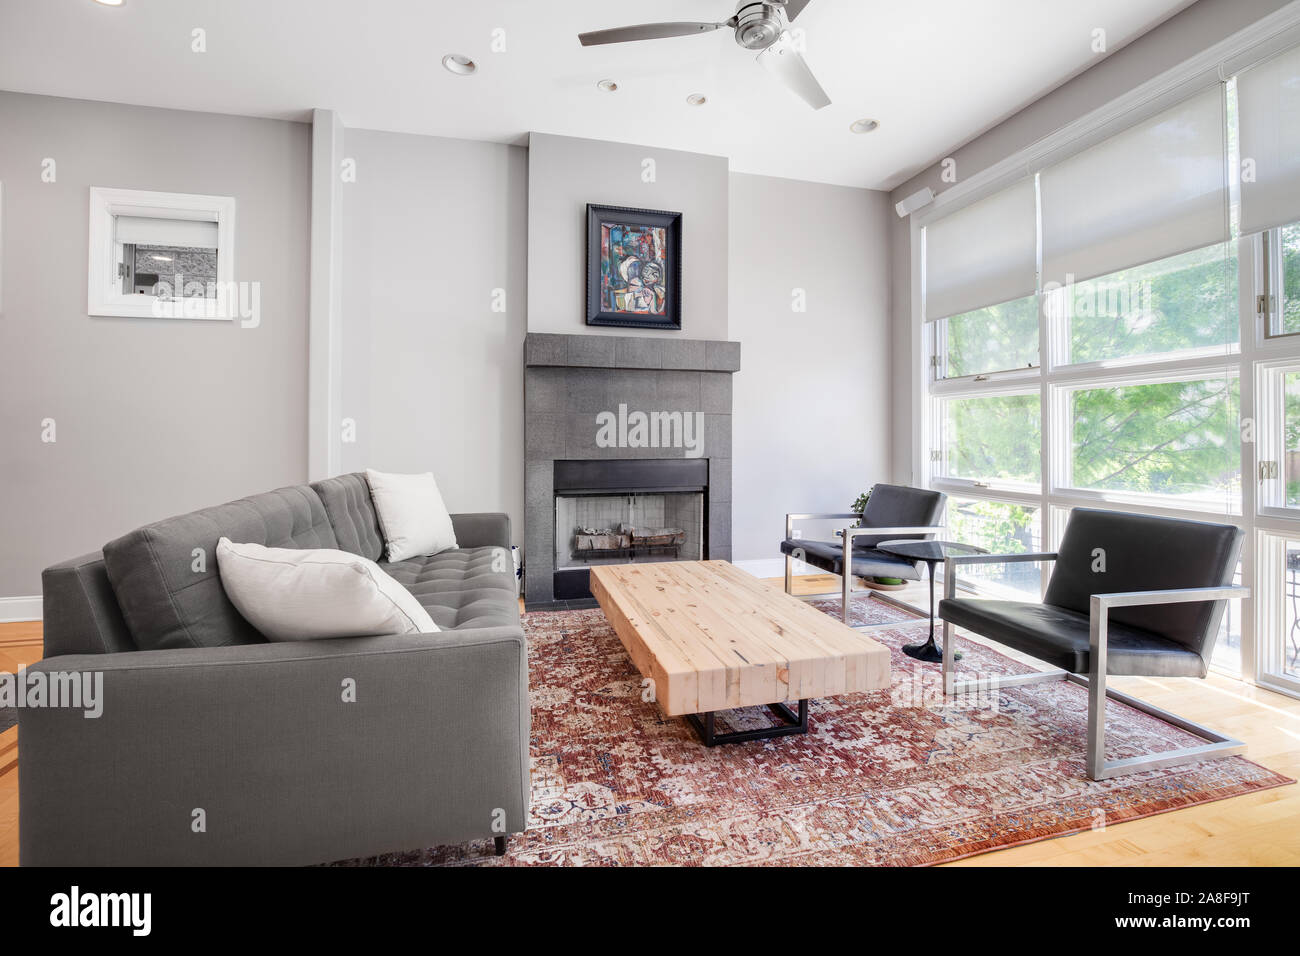 Ein luxuriöses Wohnzimmer mit schwarzen Ledersesseln, komfortable grau Couch mit weißen Akzenten Kissen, Holz Couchtisch und einem Kamin an der Wand. Stockfoto